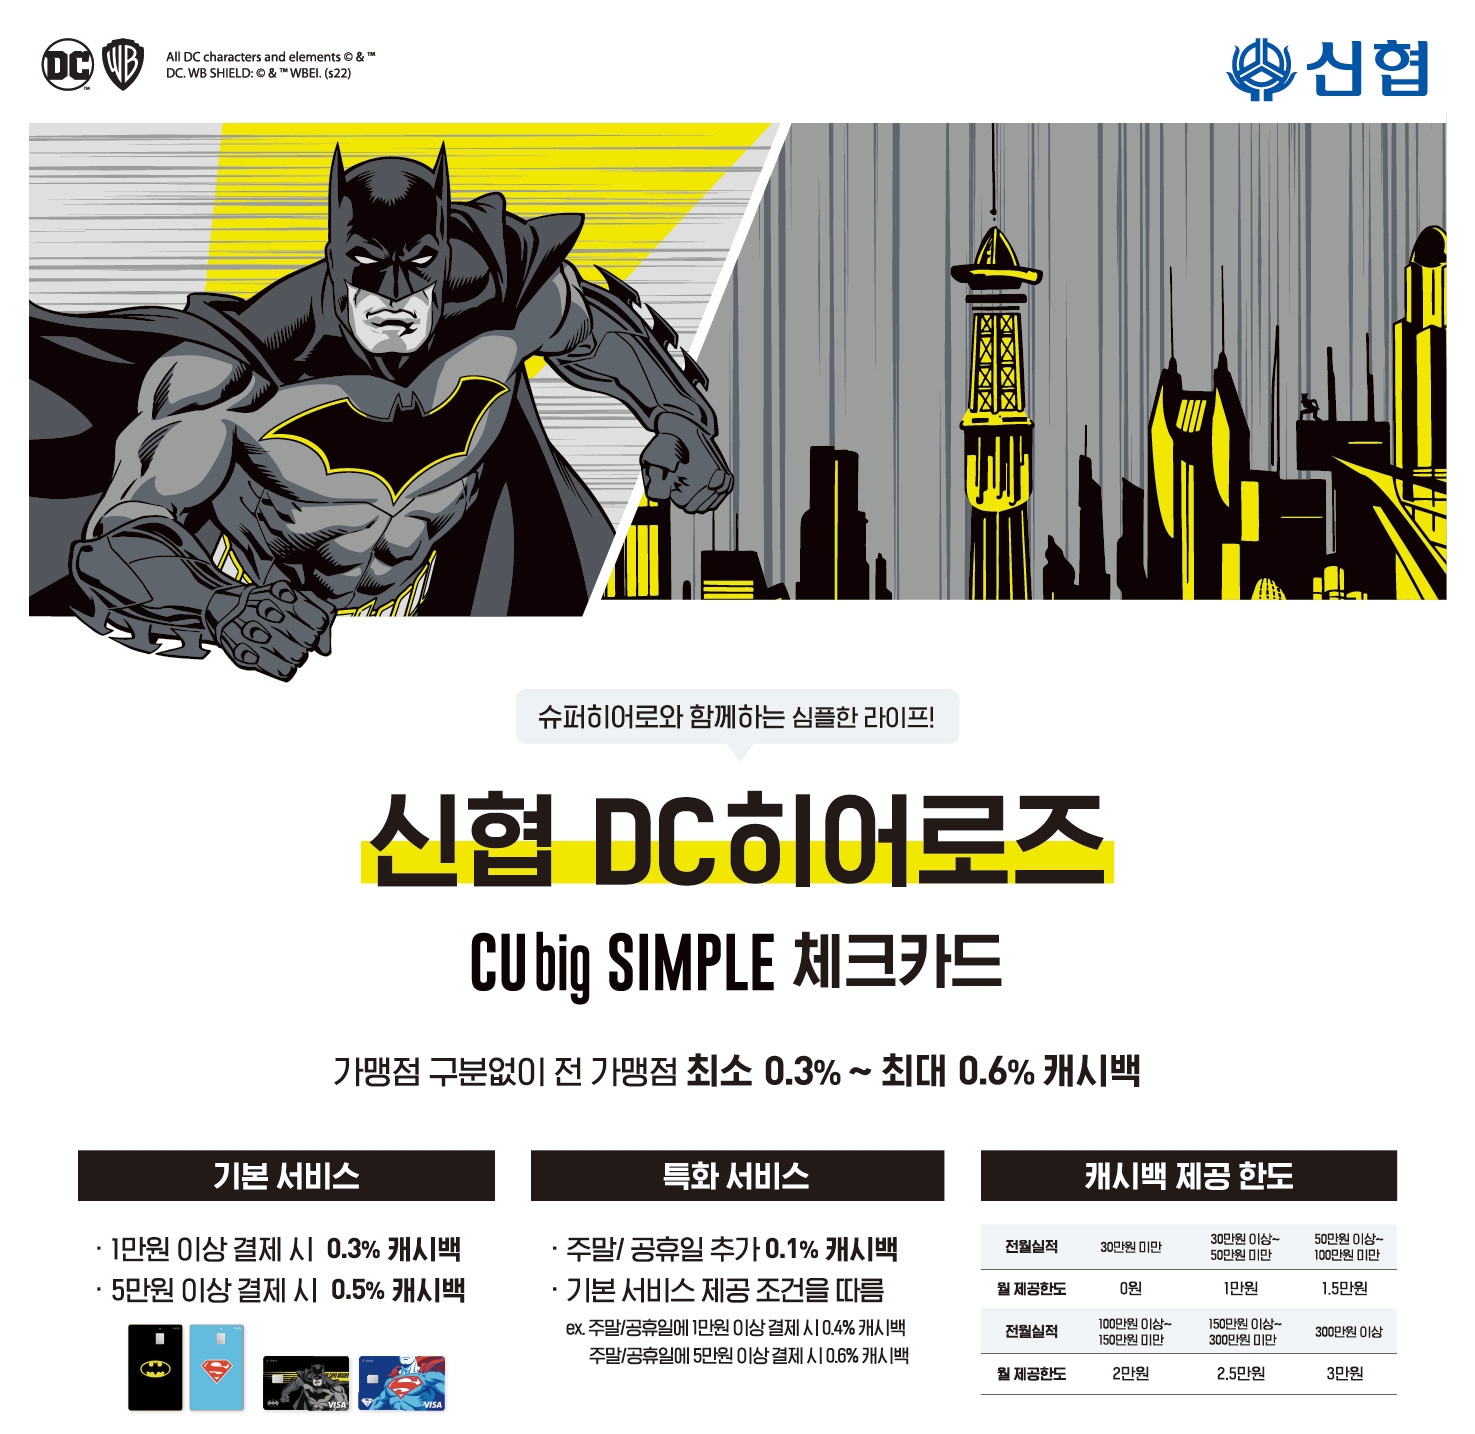 신협의 큐빅 심플(CUbig SIMPLE) 캐릭터형 체크카드. /사진제공=신협중앙회